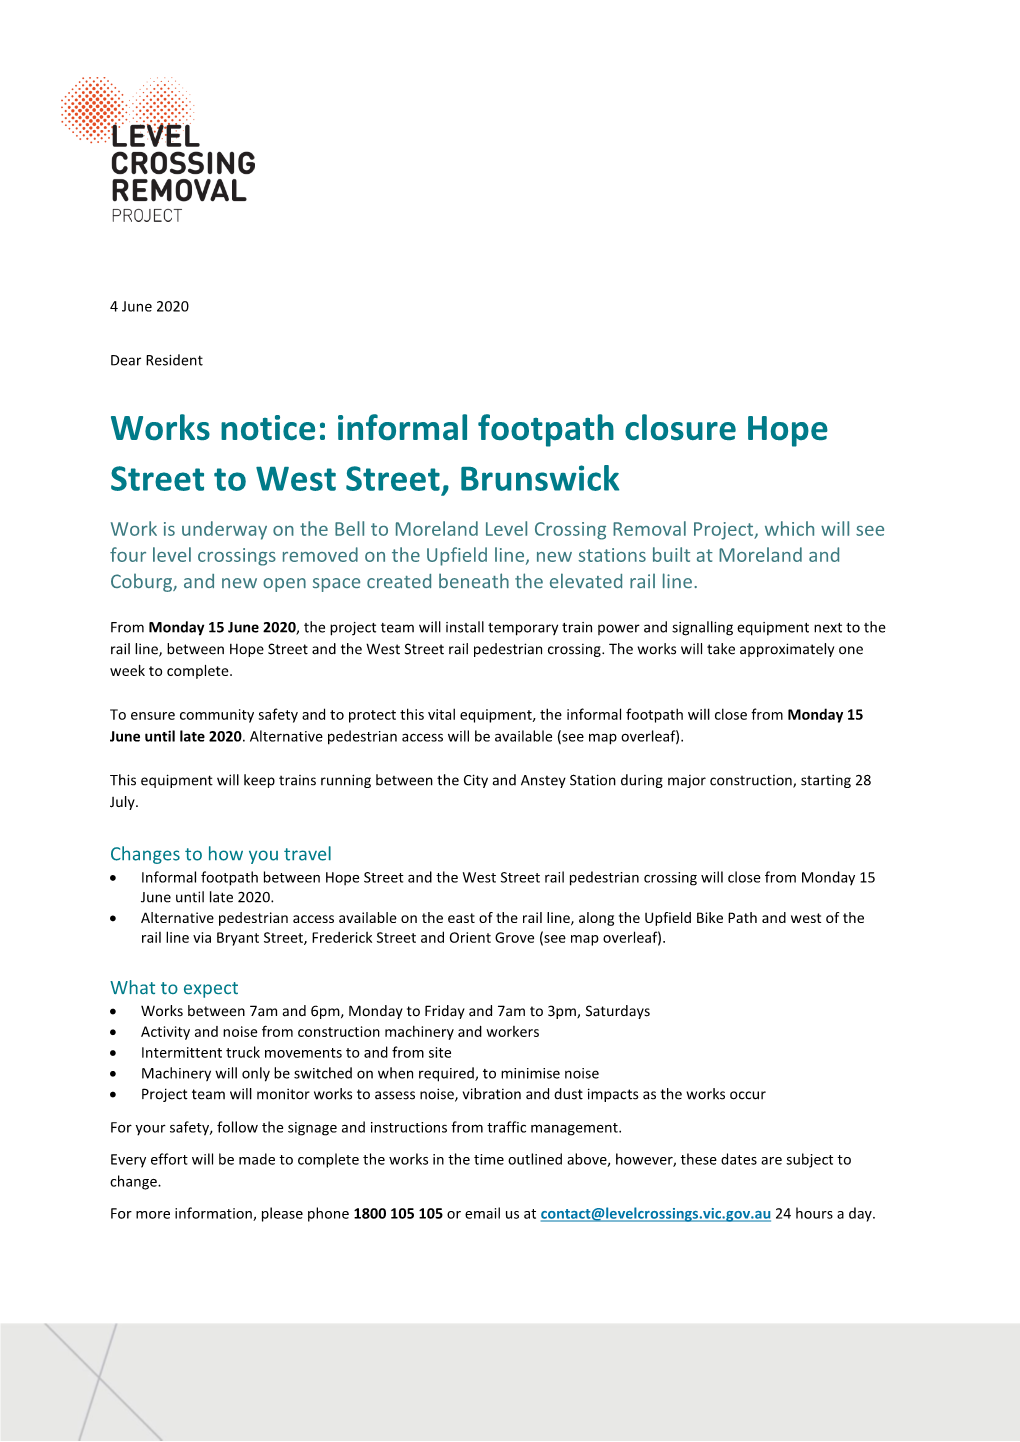 Works Notice: Informal Footpath Closure Hope Street to West Street